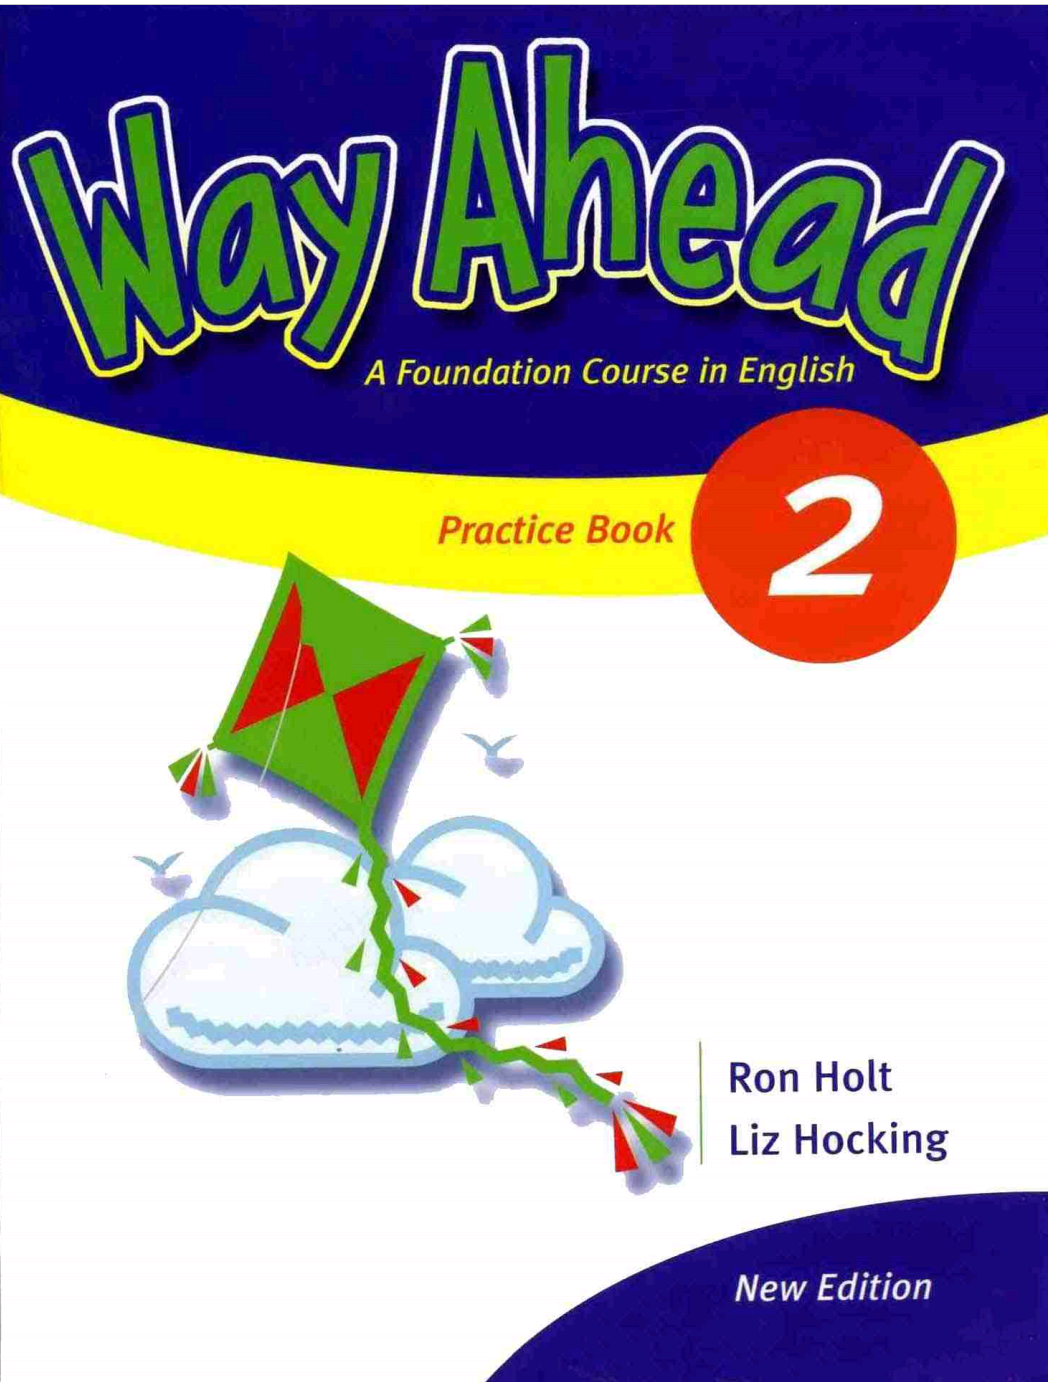 Way Ahead Practice Book 2